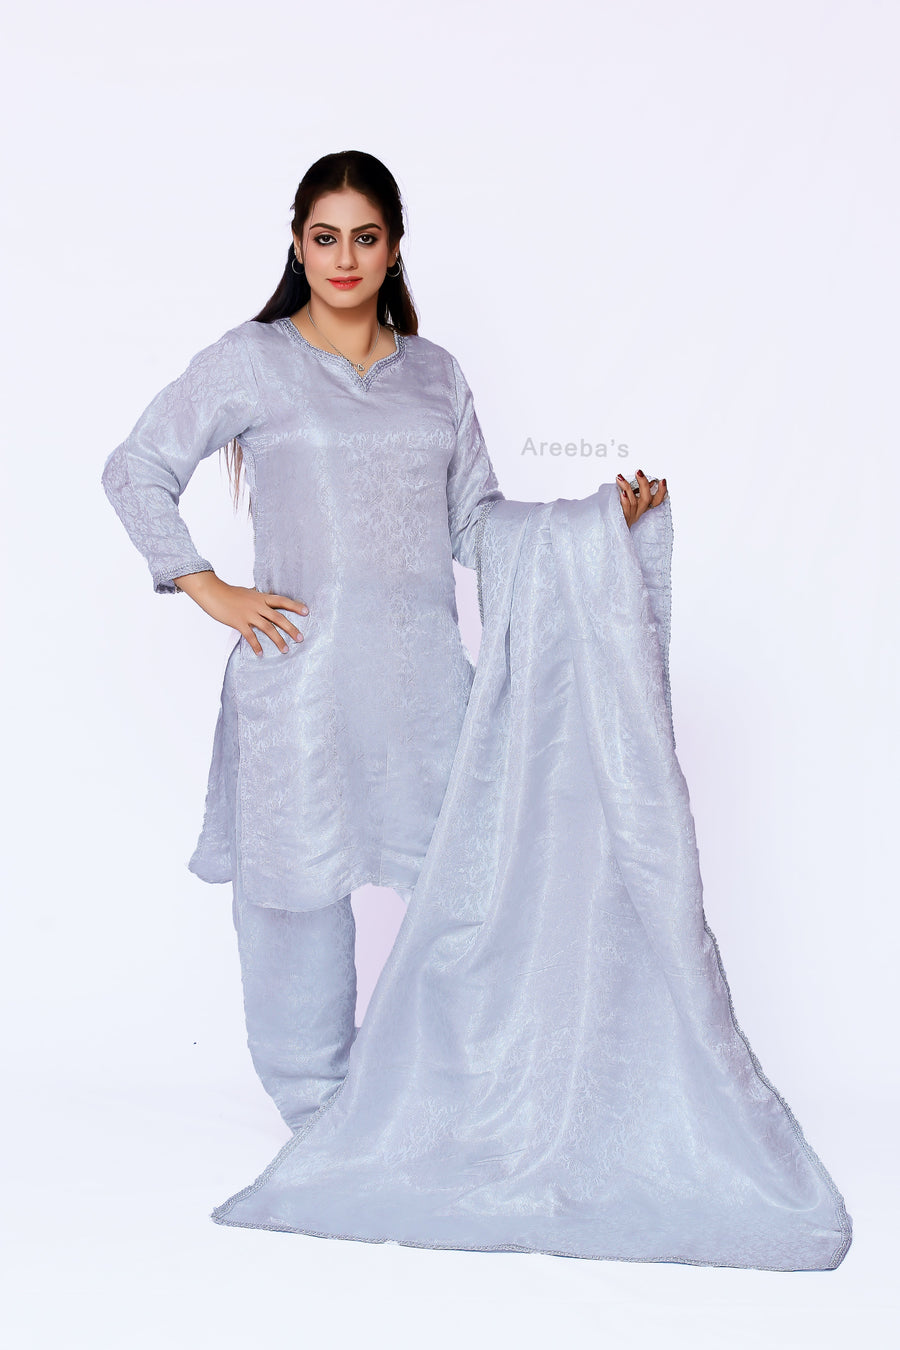 French Grey Banarasi shalwar kameez- Areeba's Couture